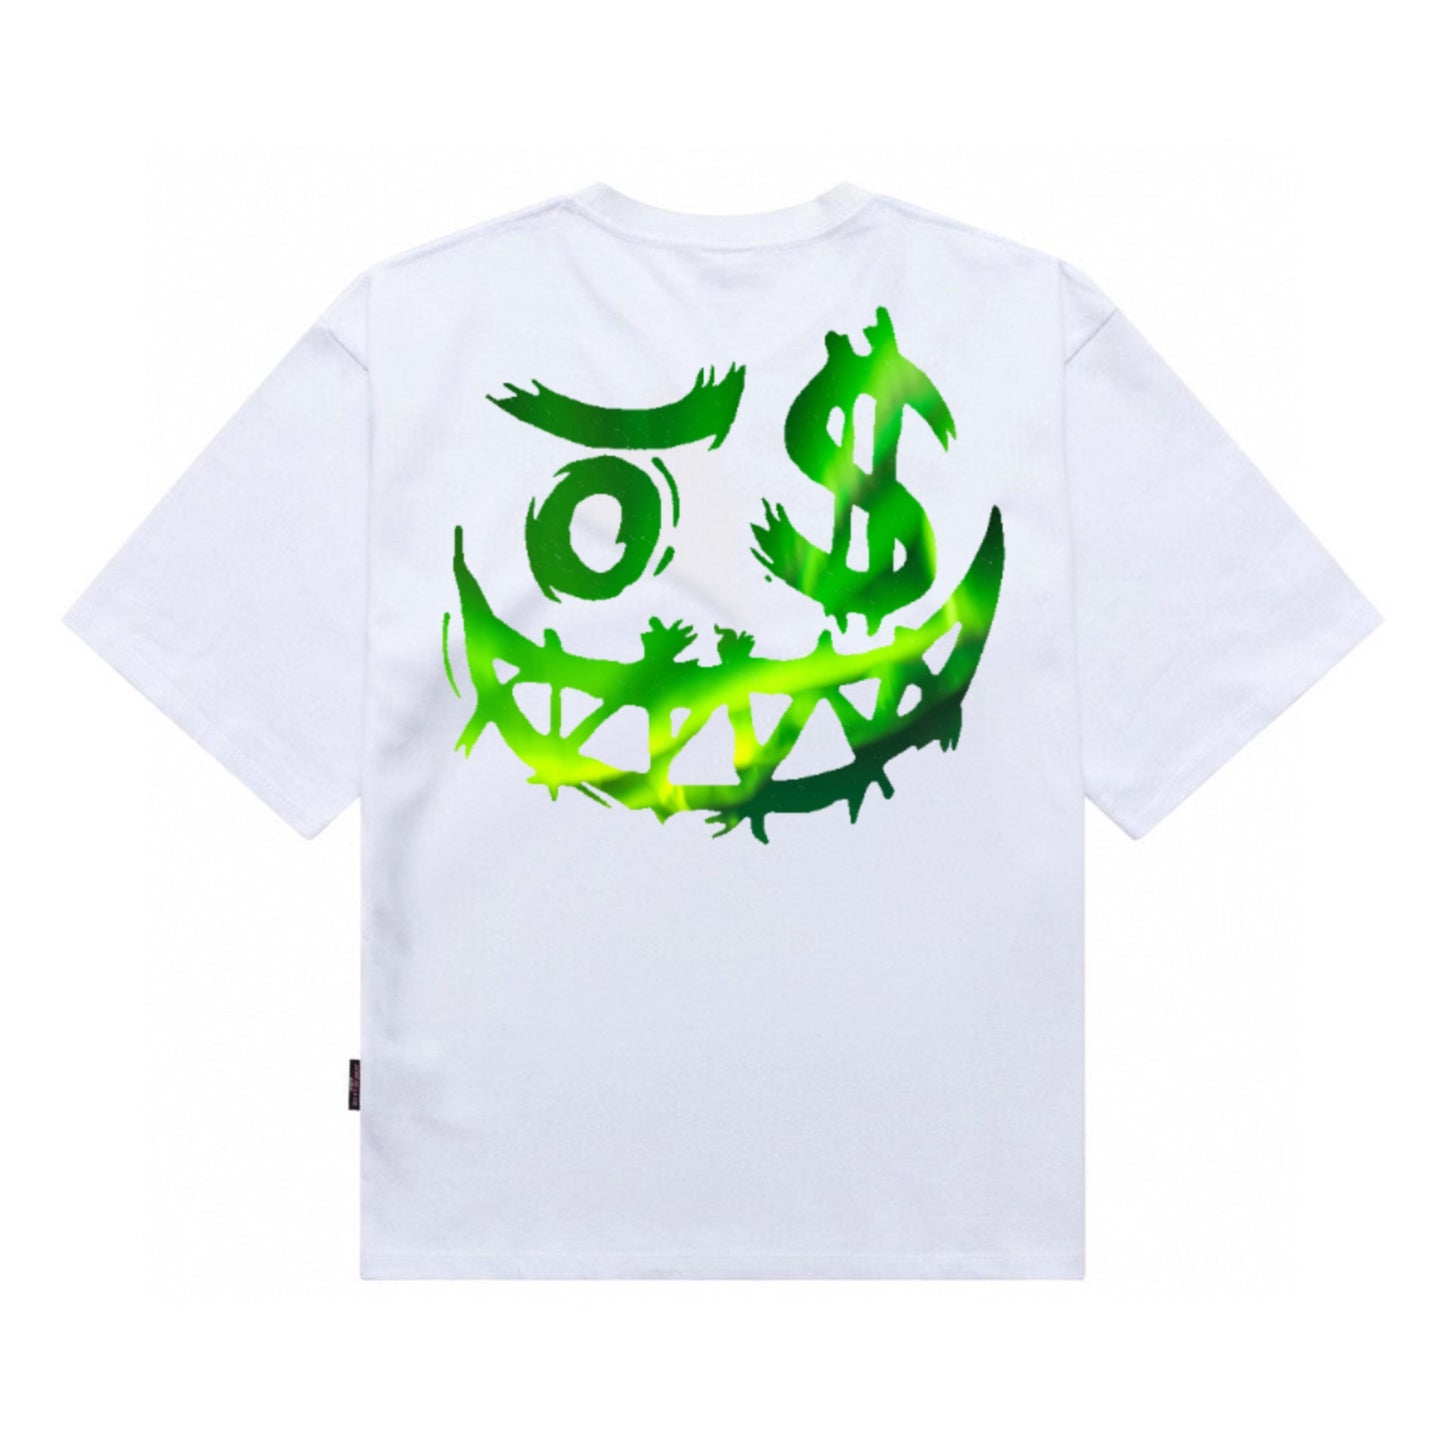 Etiquette Oversized T-Shirt - [0170] Ricky Money Clown